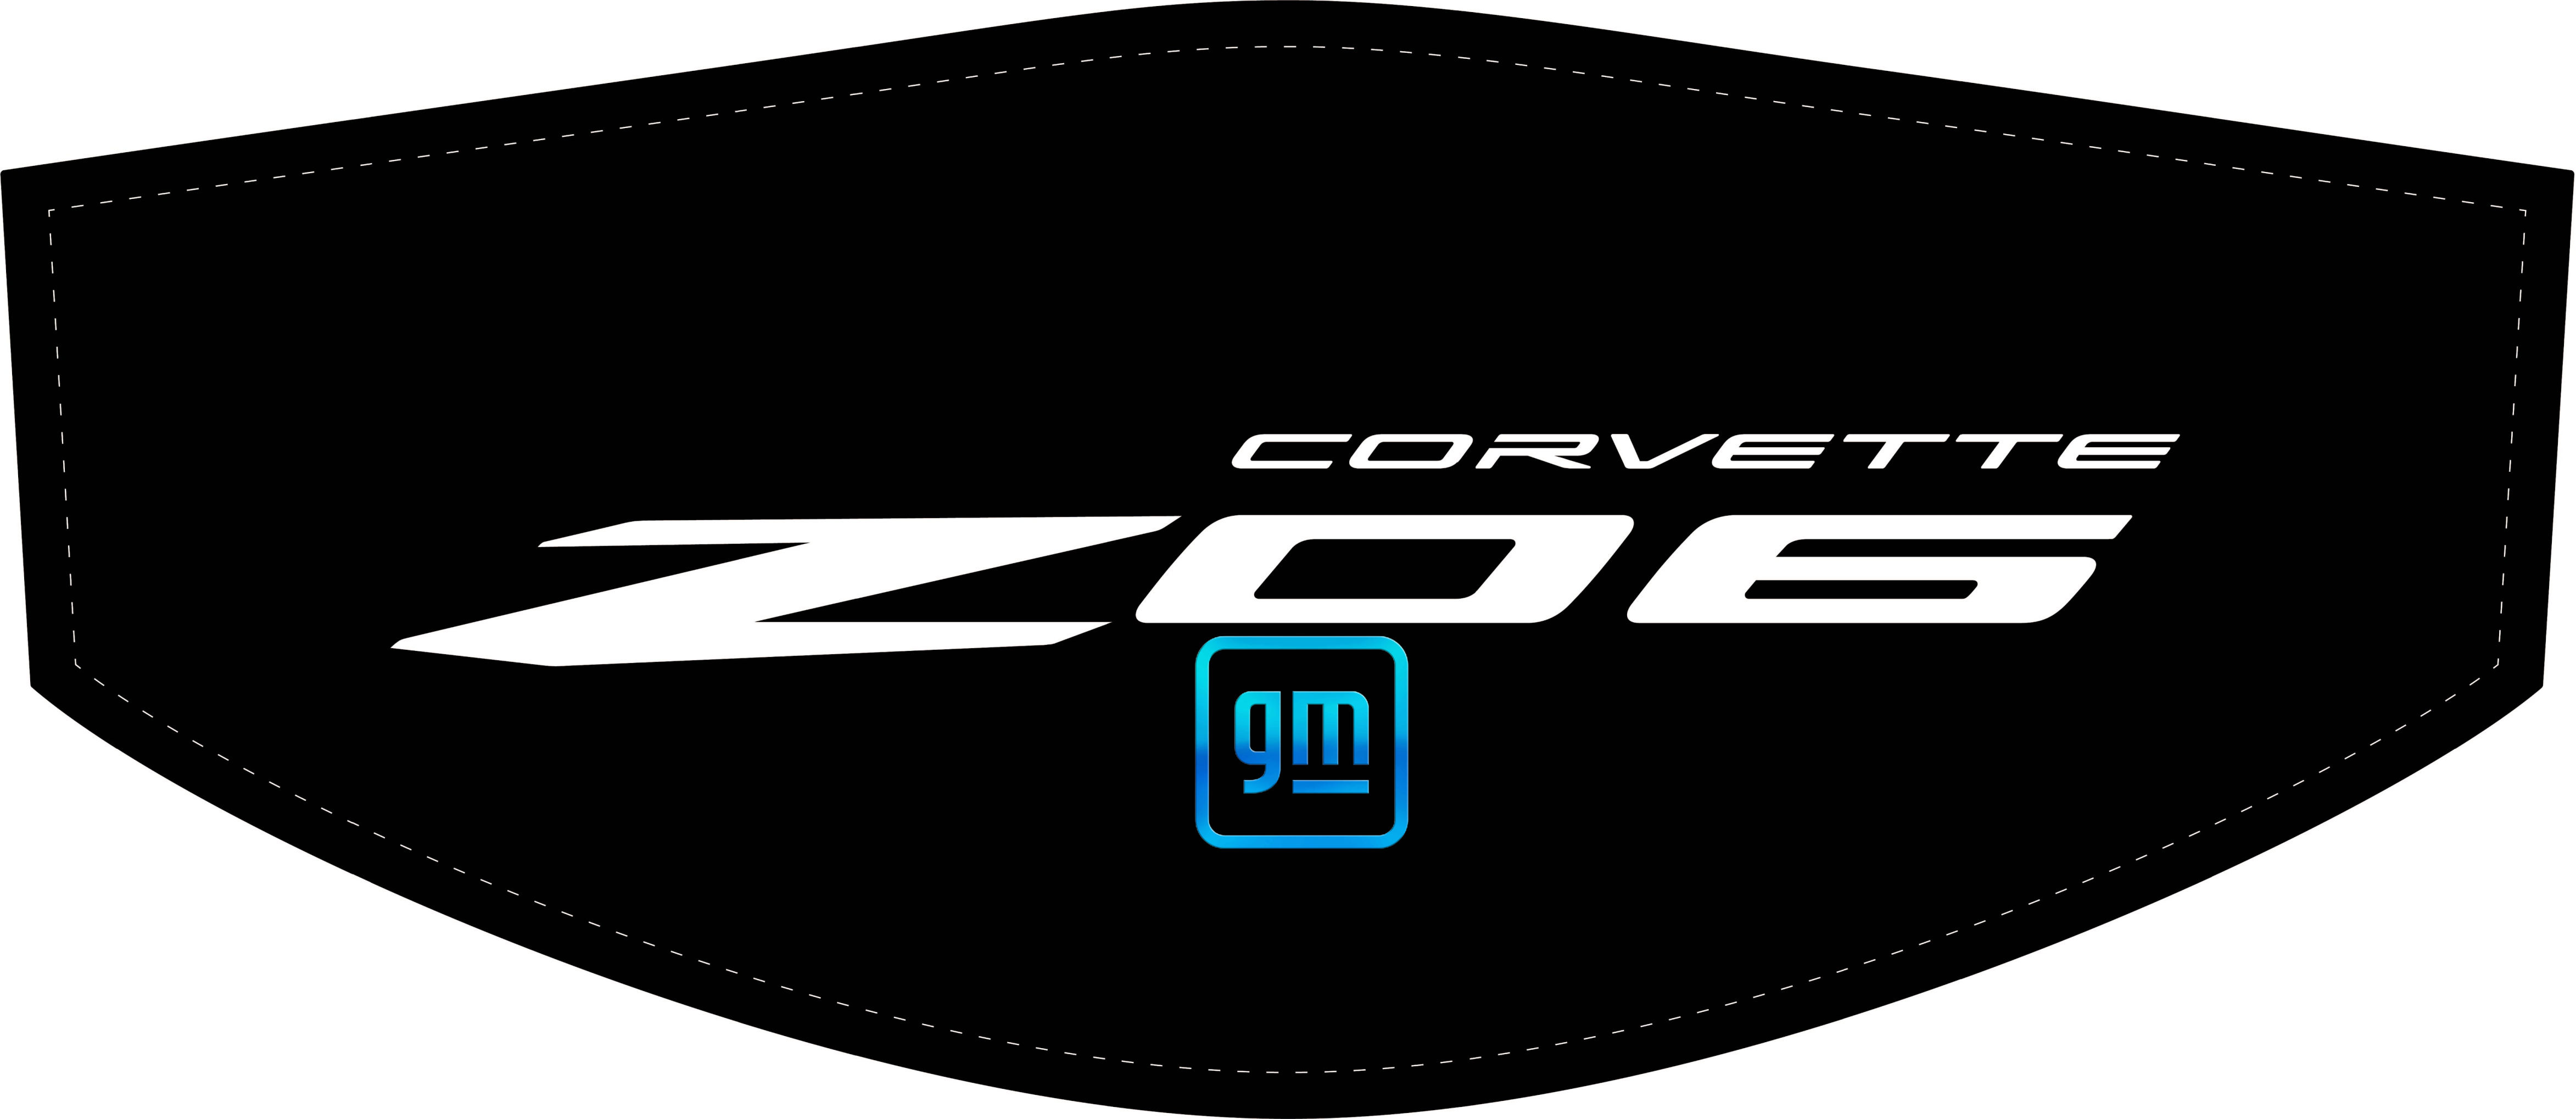 File:Corvette-Logo-C5.jpg - Wikimedia Commons